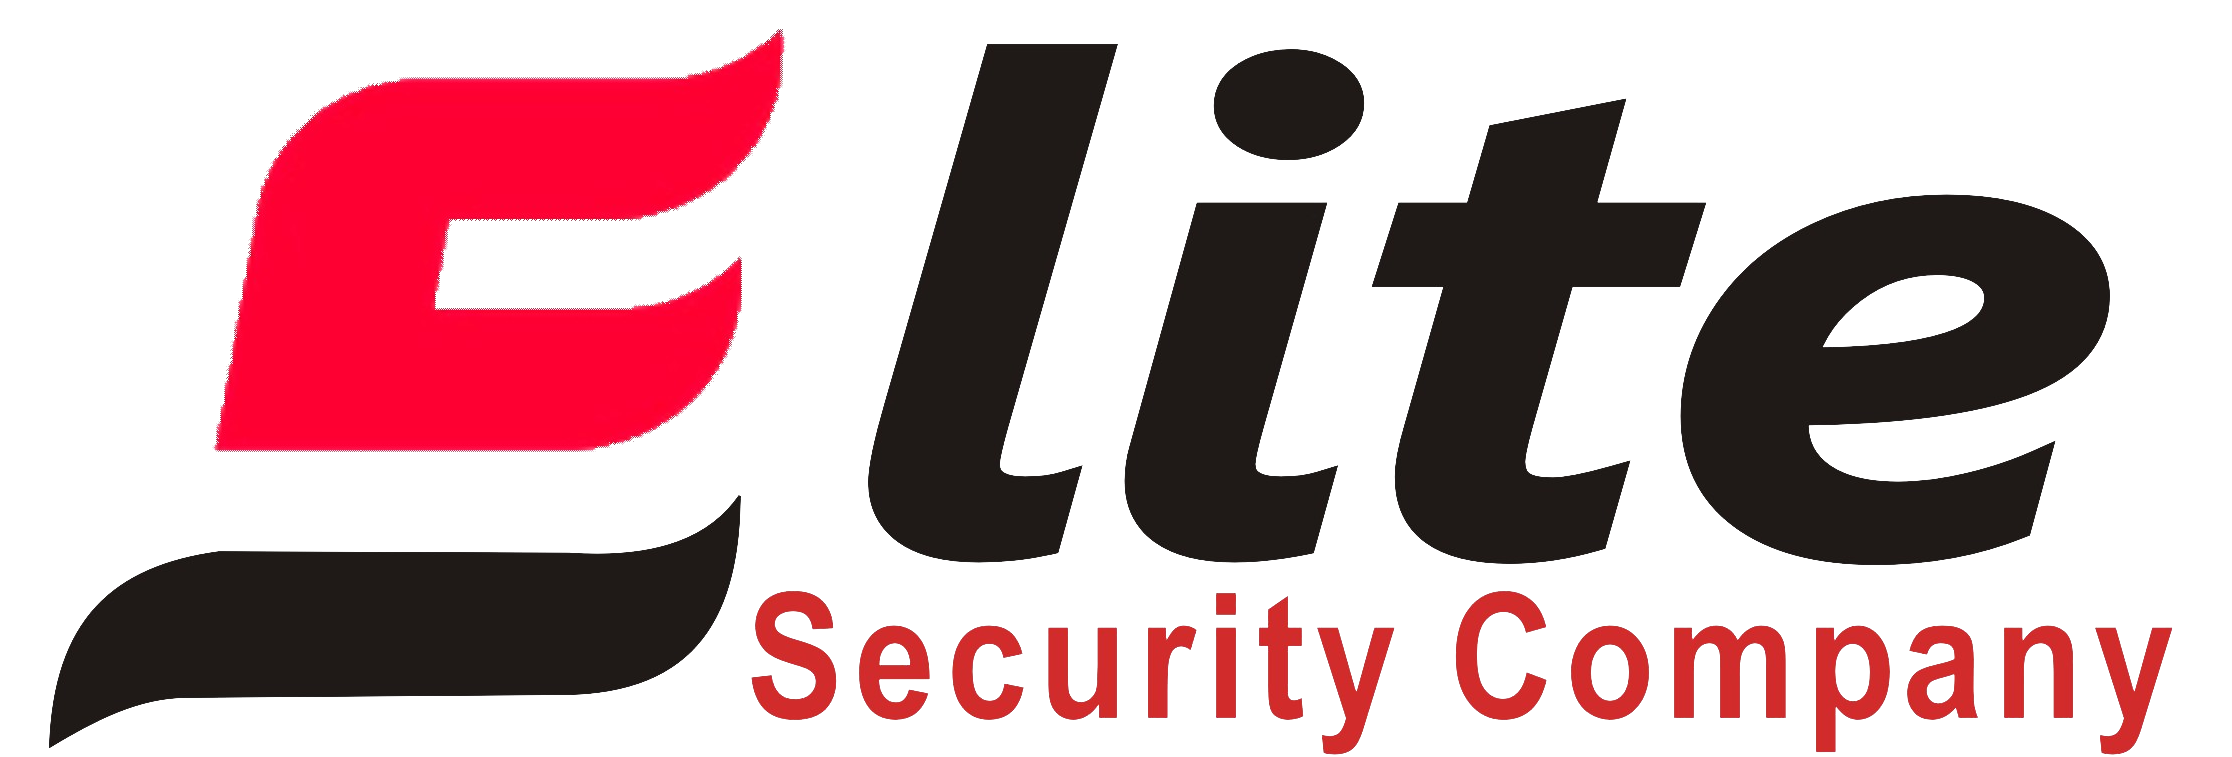 Elite Security Company